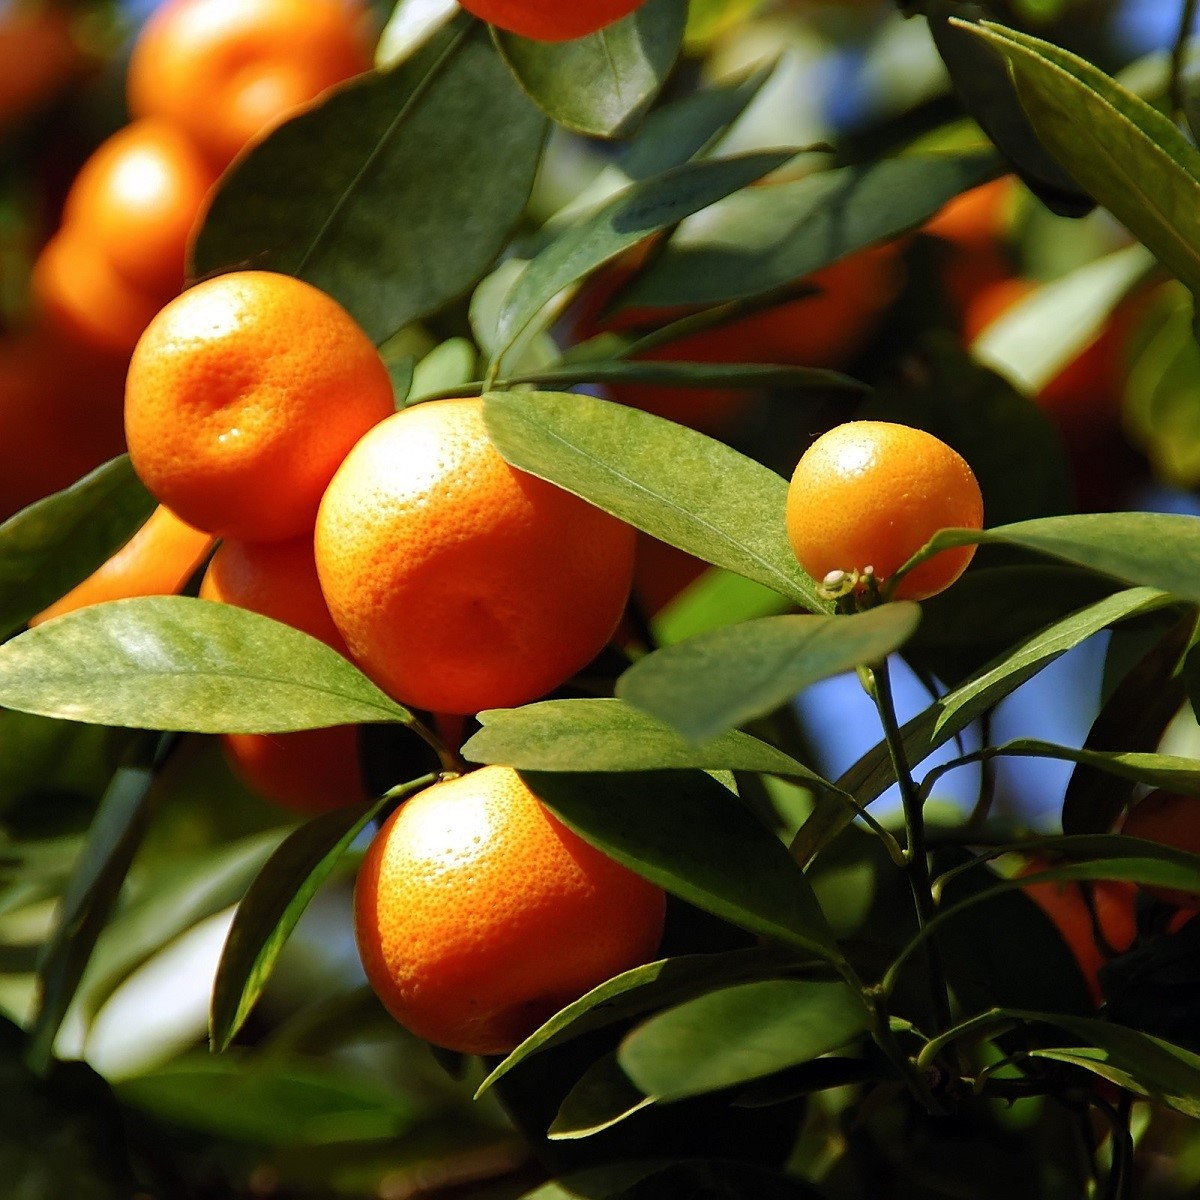 Pomerančovník zakrslý - Citrus mitis - semena pomerančovníku - 3 ks